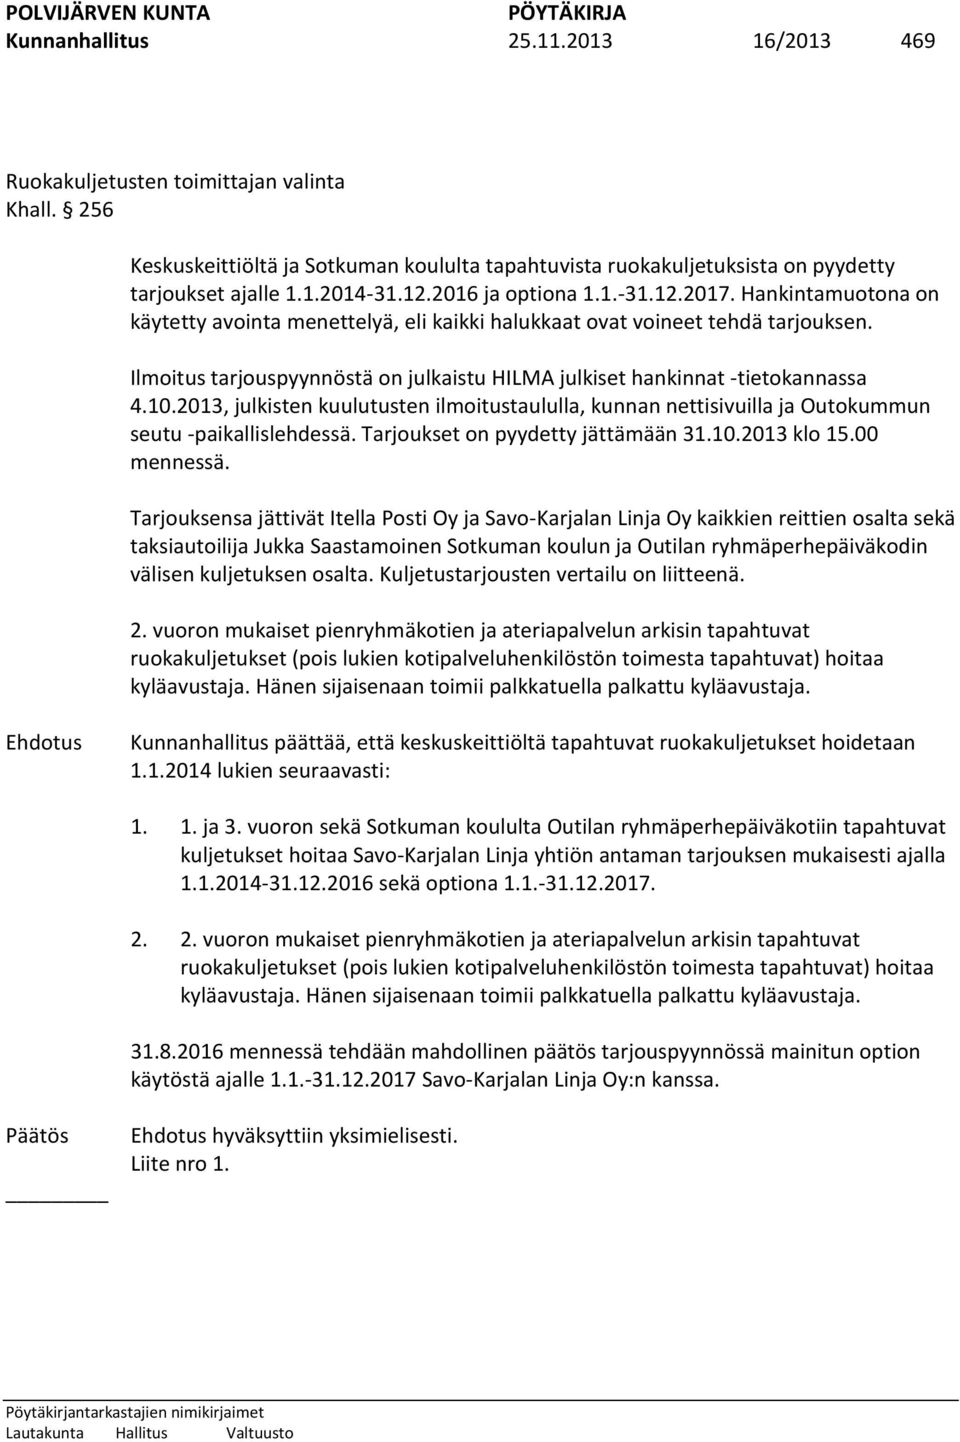 Ilmoitus tarjouspyynnöstä on julkaistu HILMA julkiset hankinnat -tietokannassa 4.10.2013, julkisten kuulutusten ilmoitustaululla, kunnan nettisivuilla ja Outokummun seutu -paikallislehdessä.